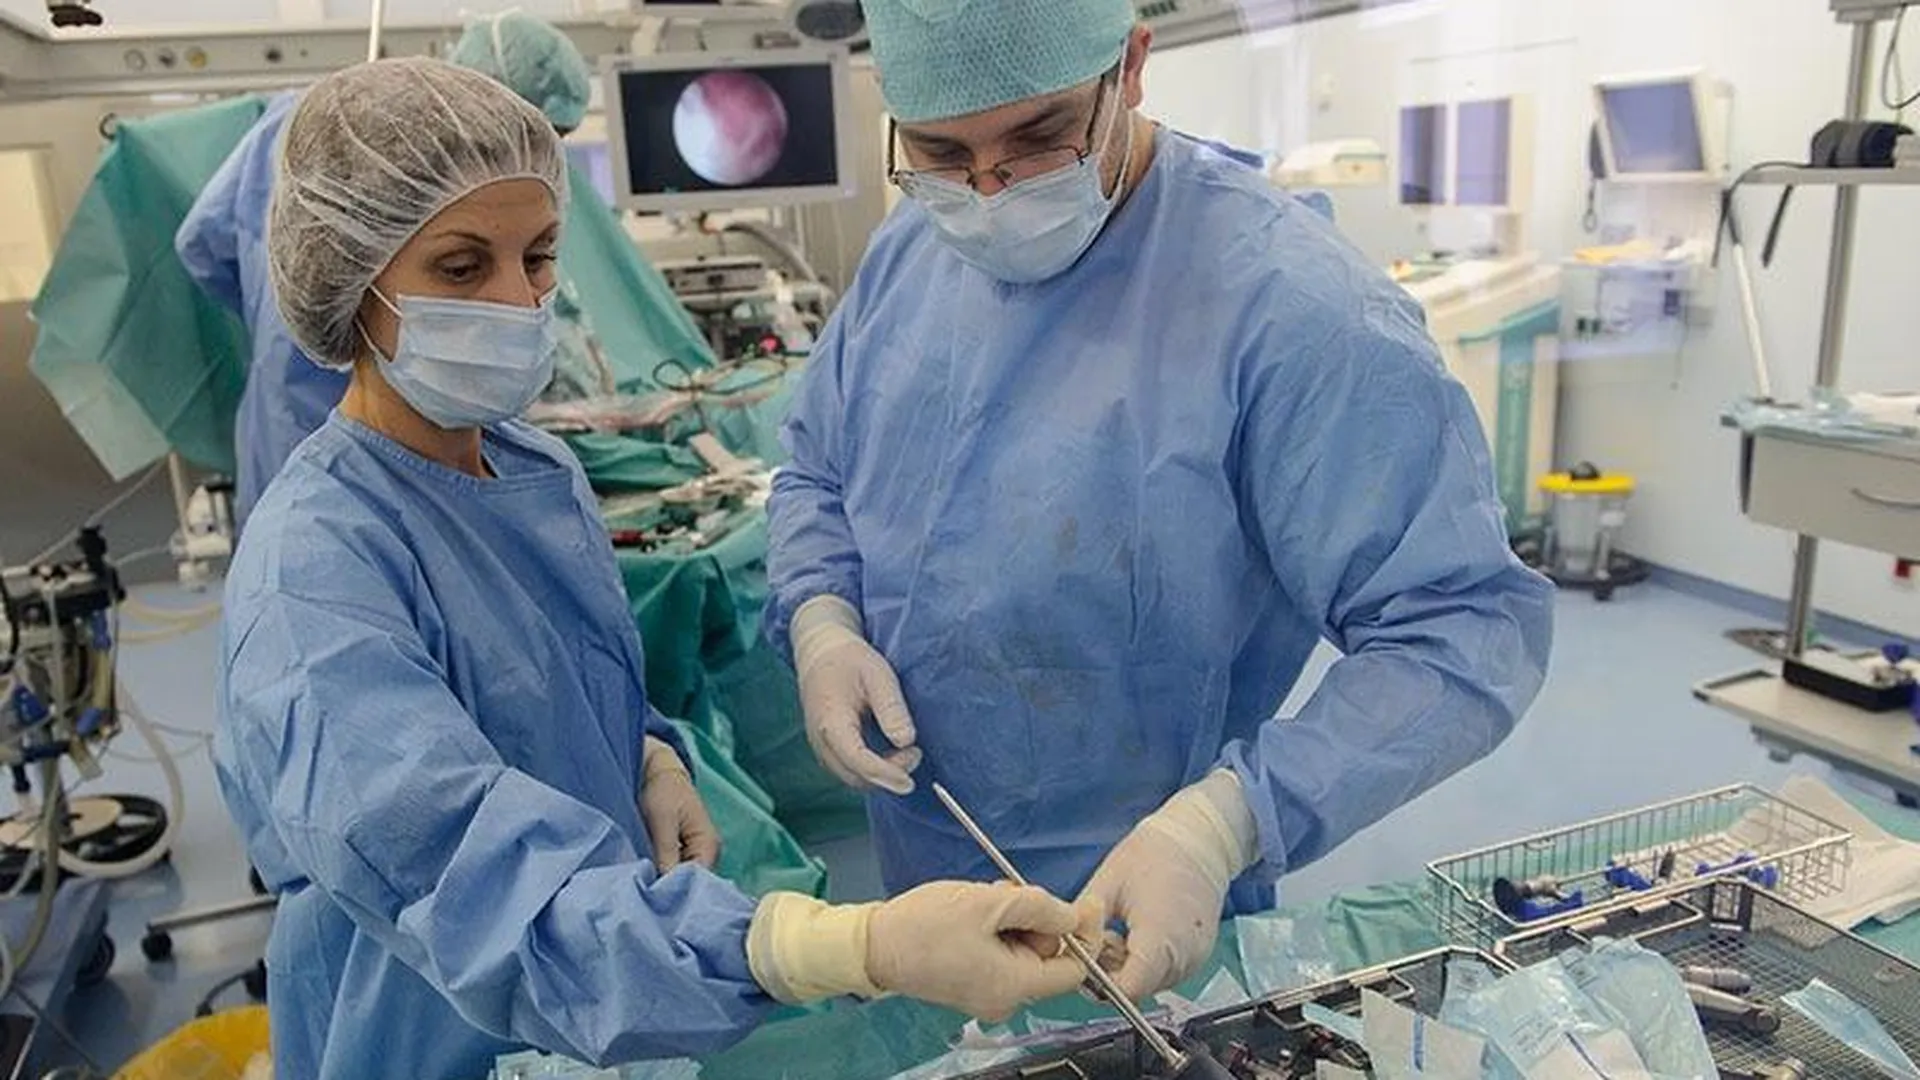 Уникальную операцию по пластике внутренних органов сделали недоношенному малышу в Подмосковье 